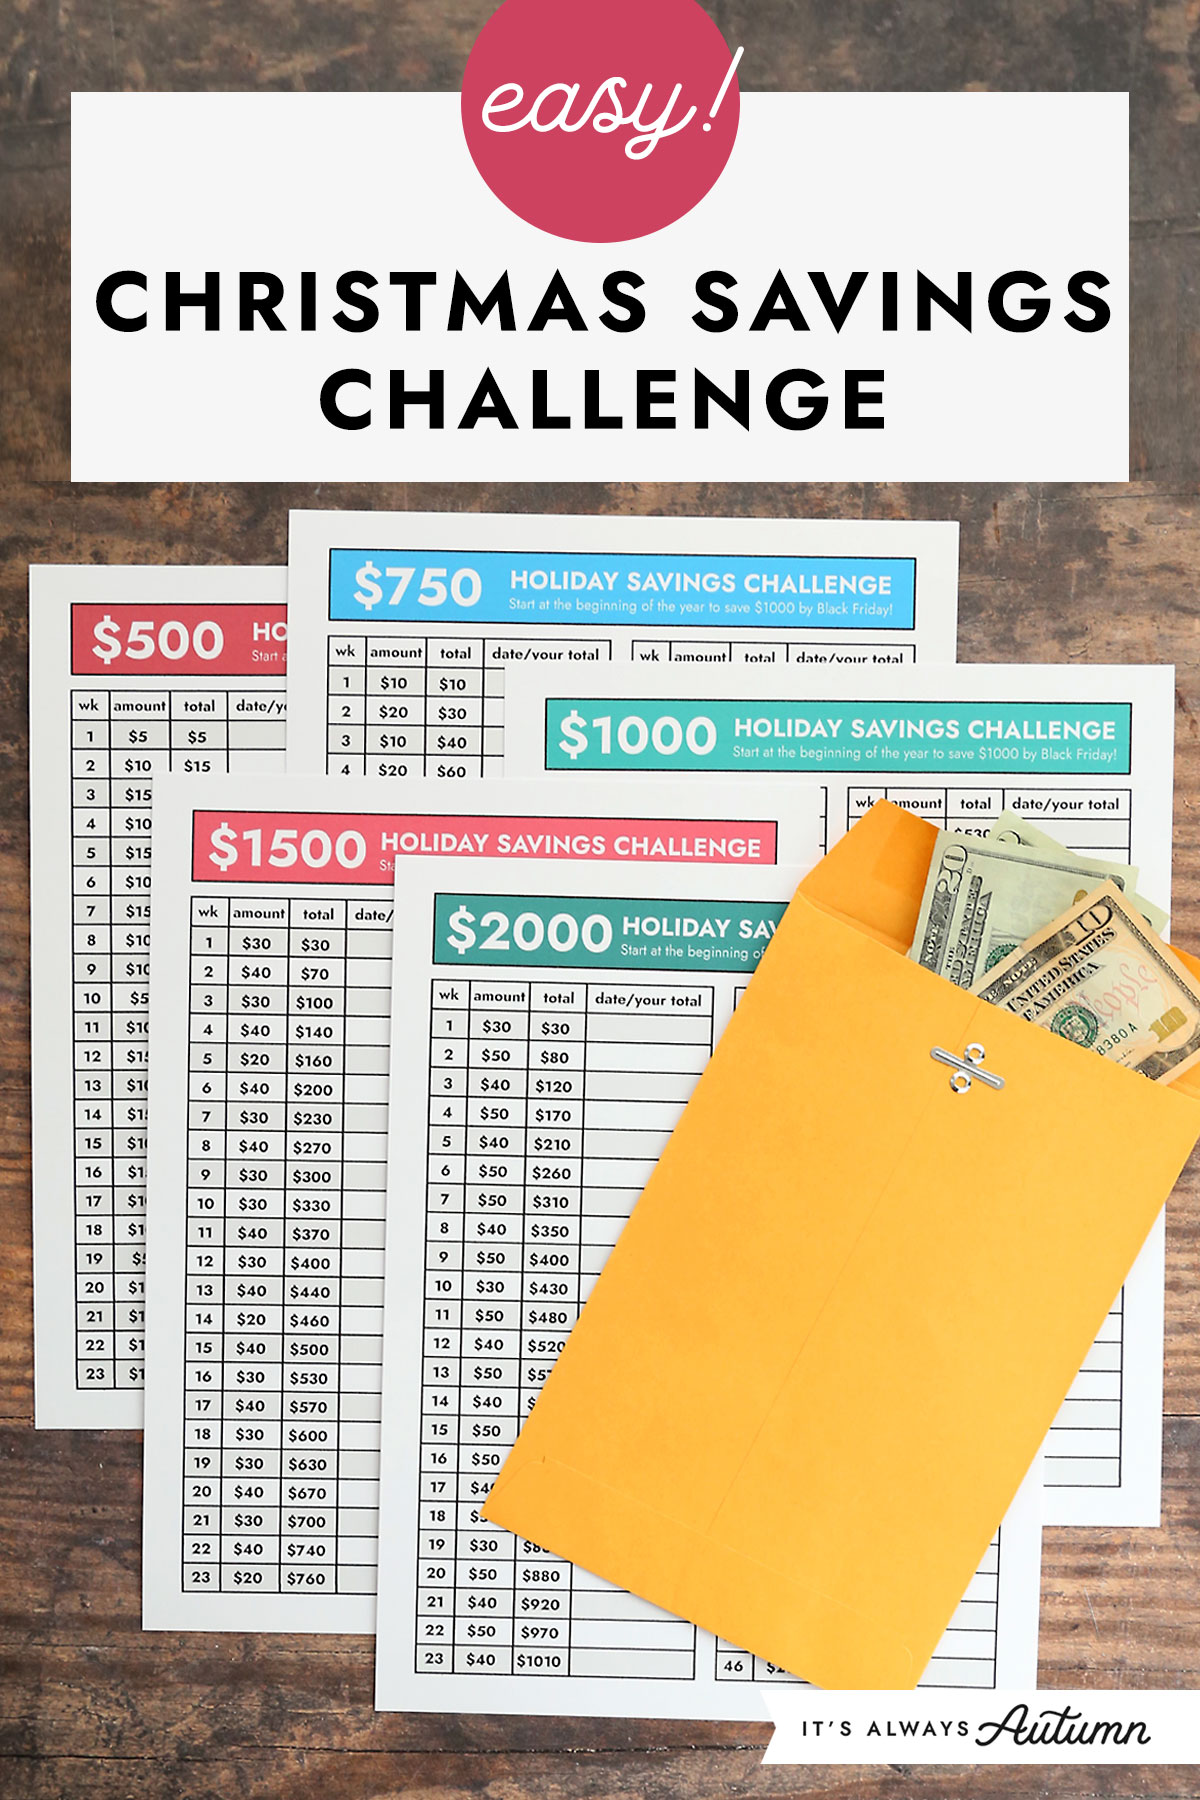 Printable Savings Challenge